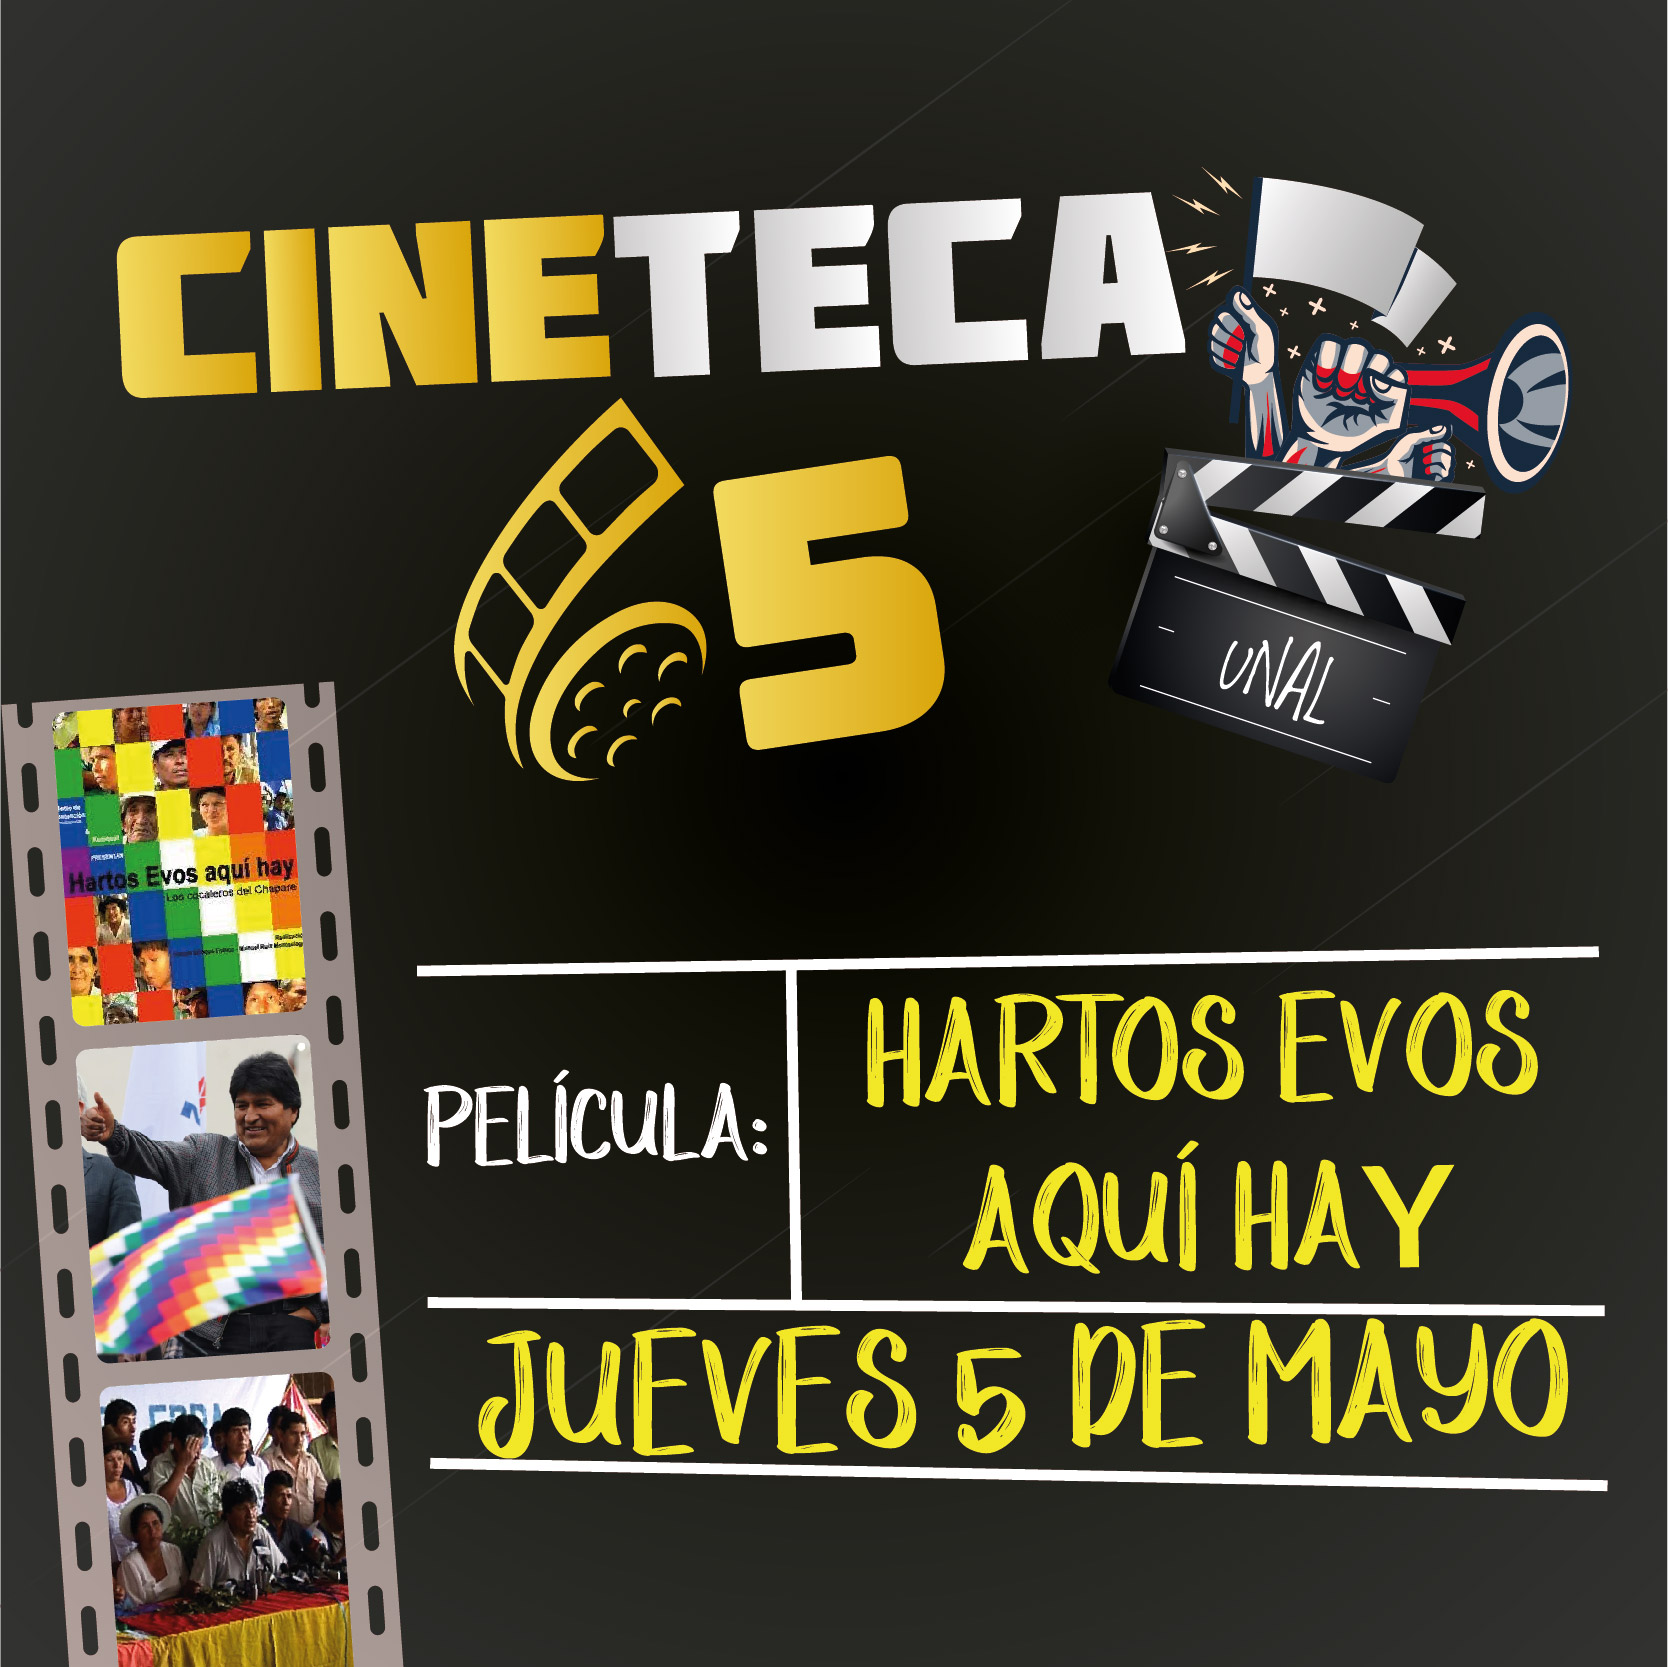 Cineteca65Evos